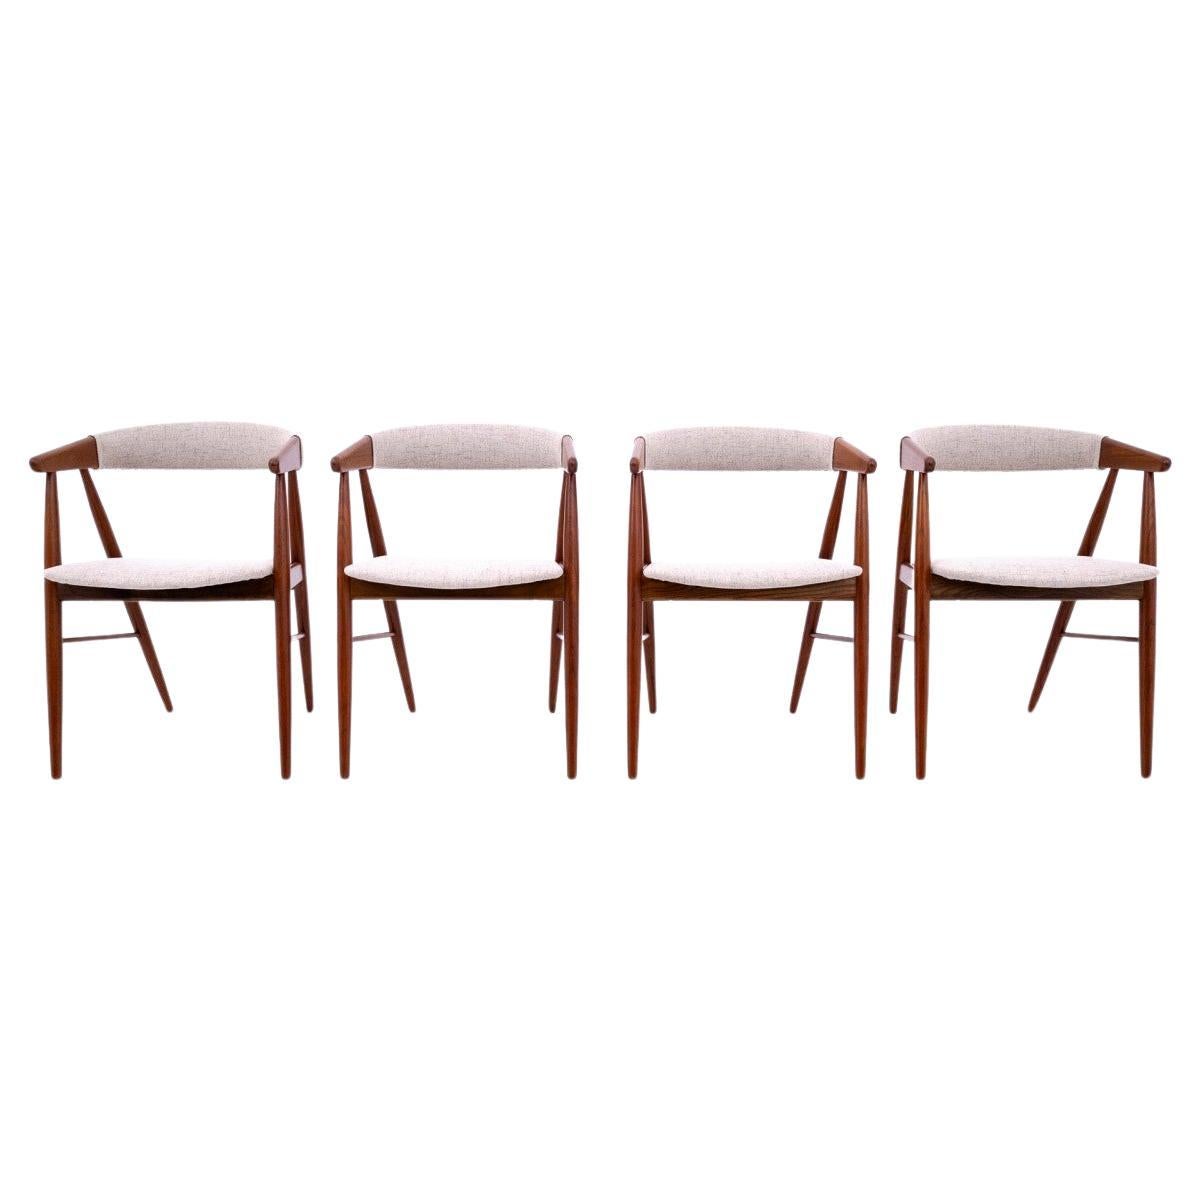 Stühle entworfen von Ejner Larsen & Aksel Bender Madsen, Dänemark, 1960er Jahre. Nach ren im Angebot